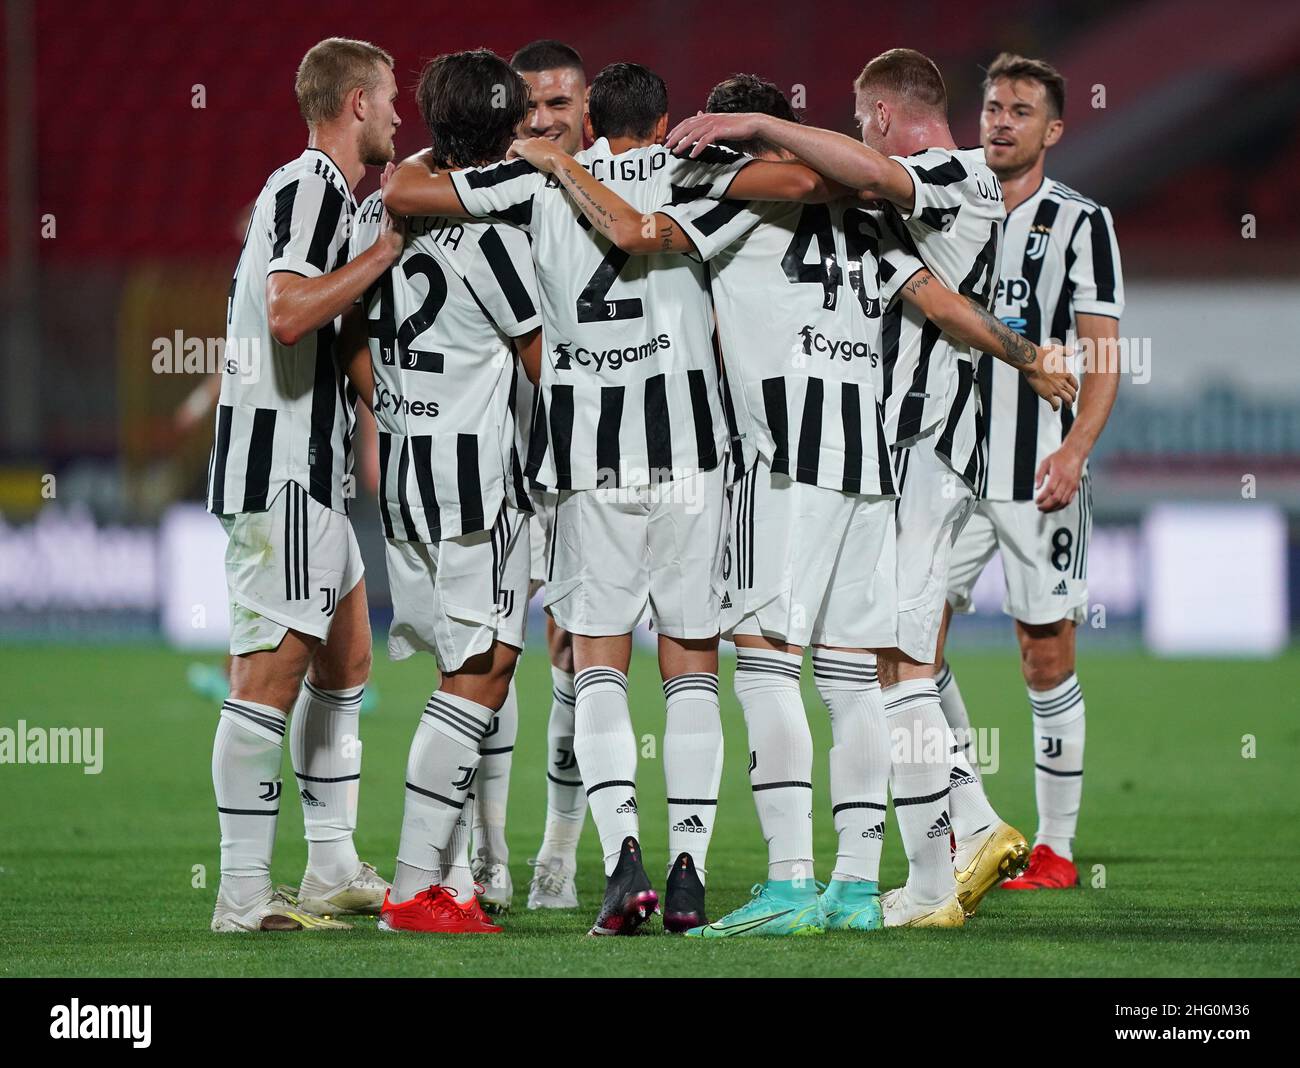 Juventus monza vs Juventus vs